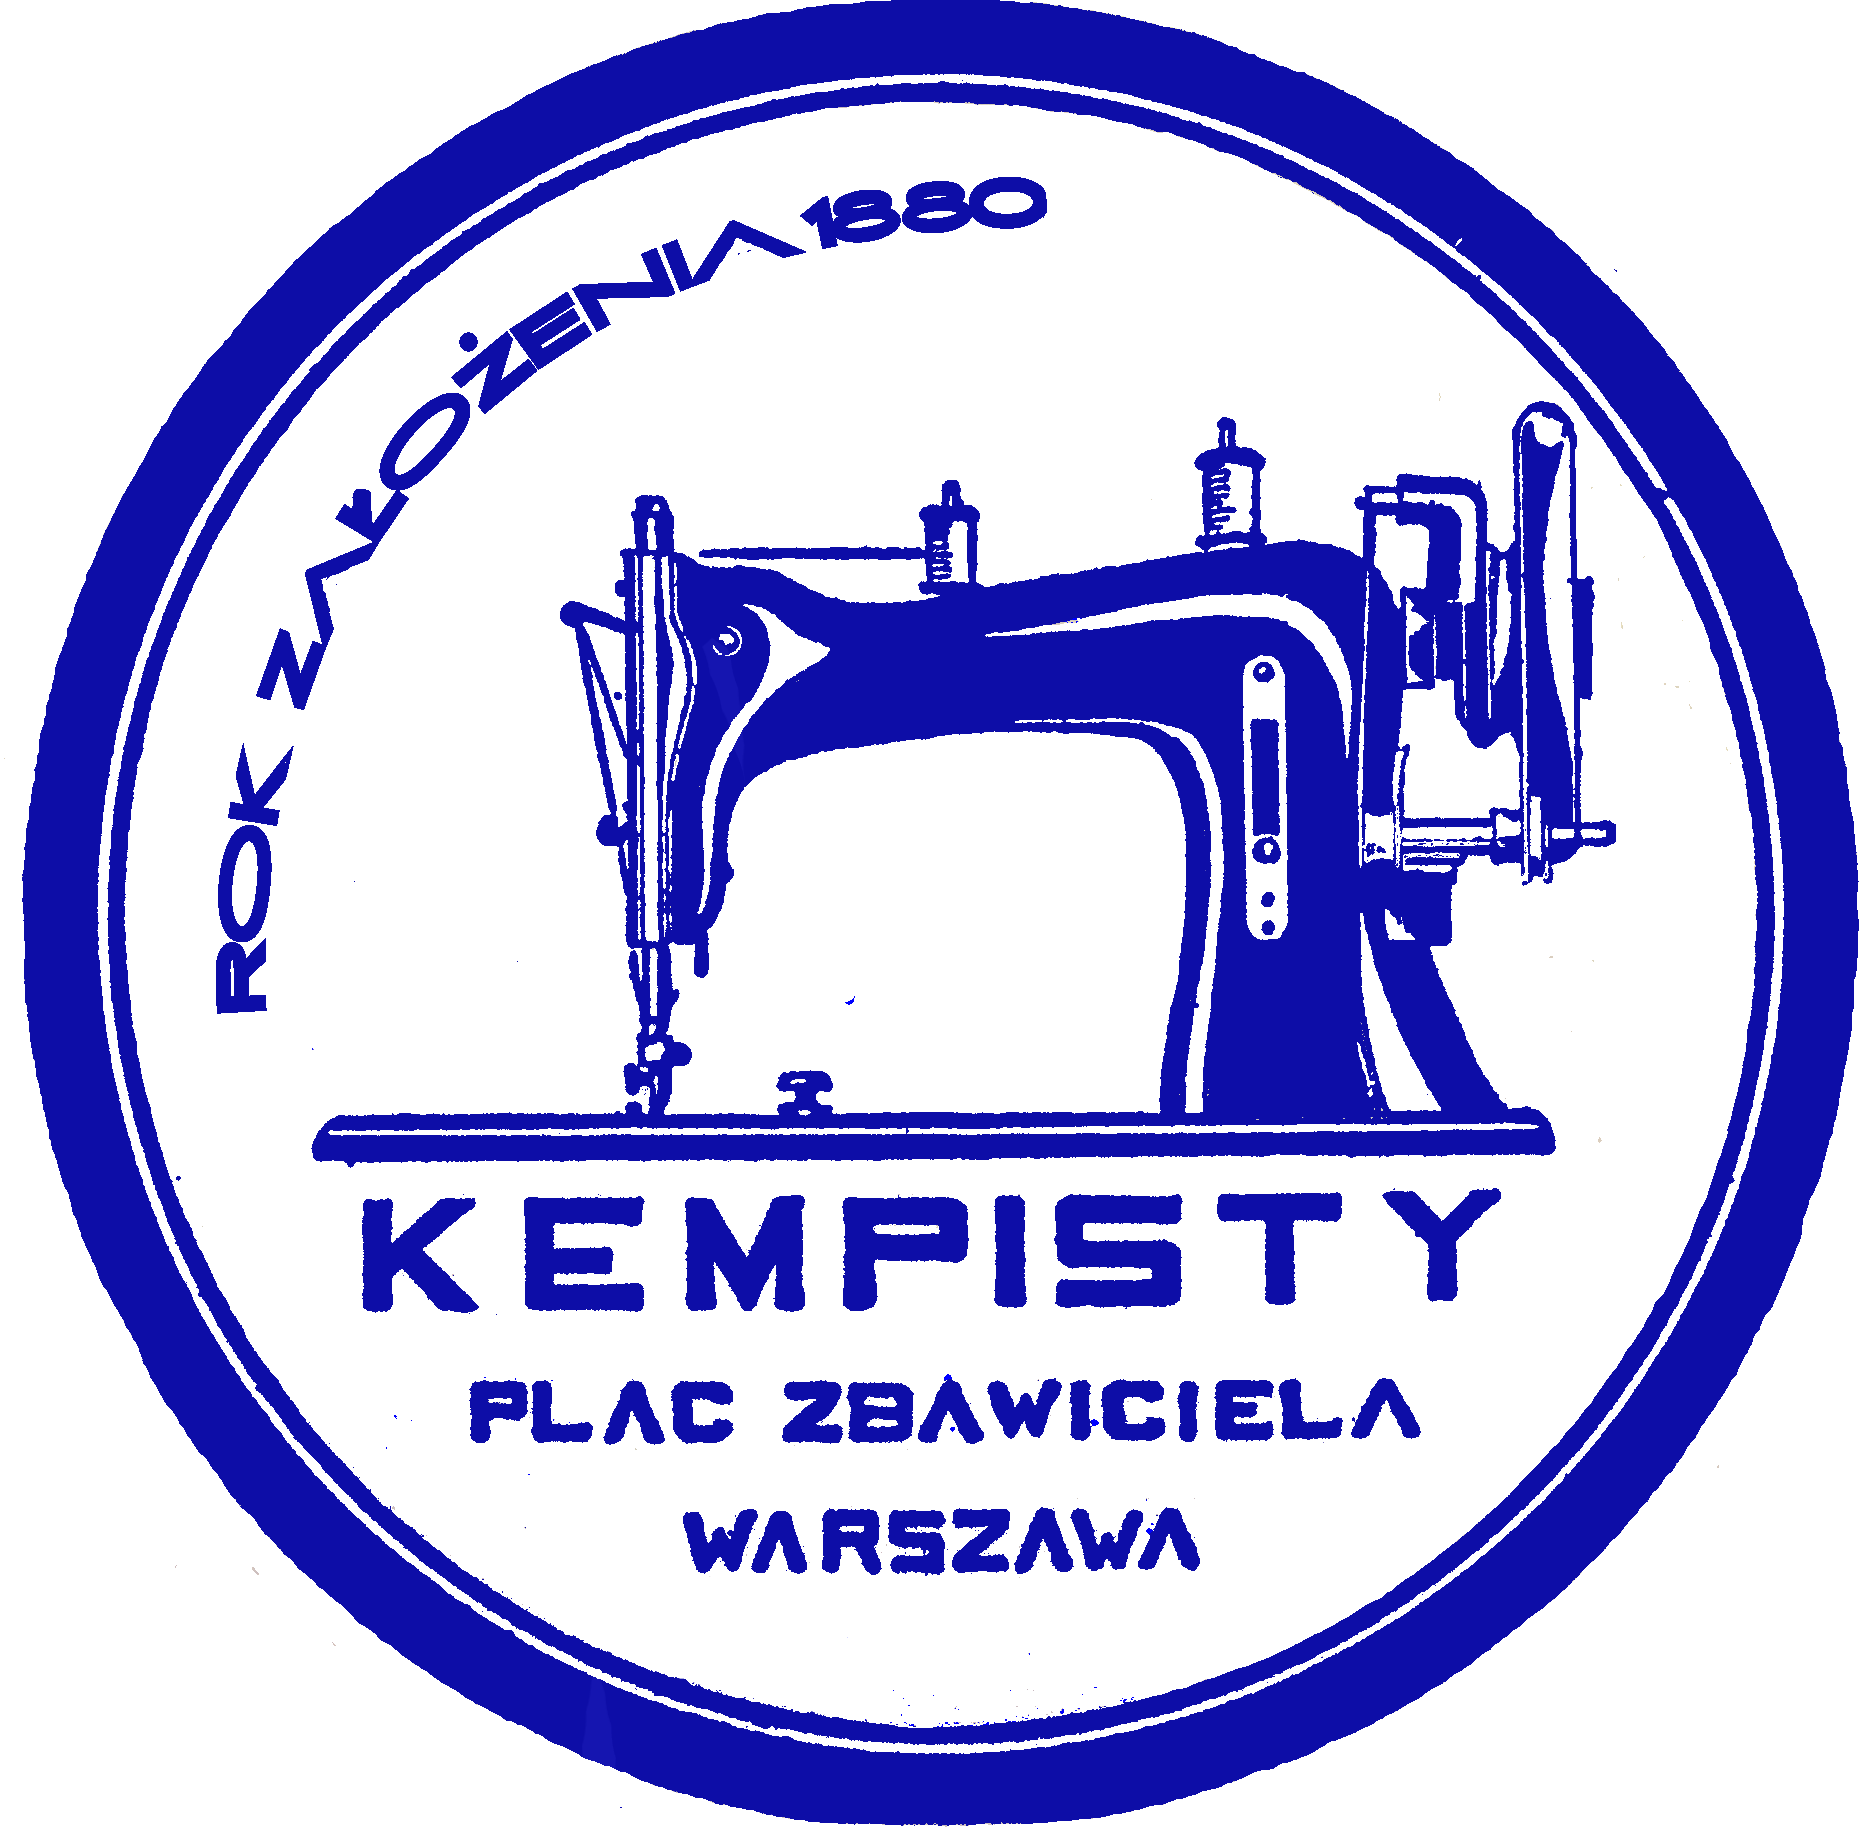 Kempisty logo